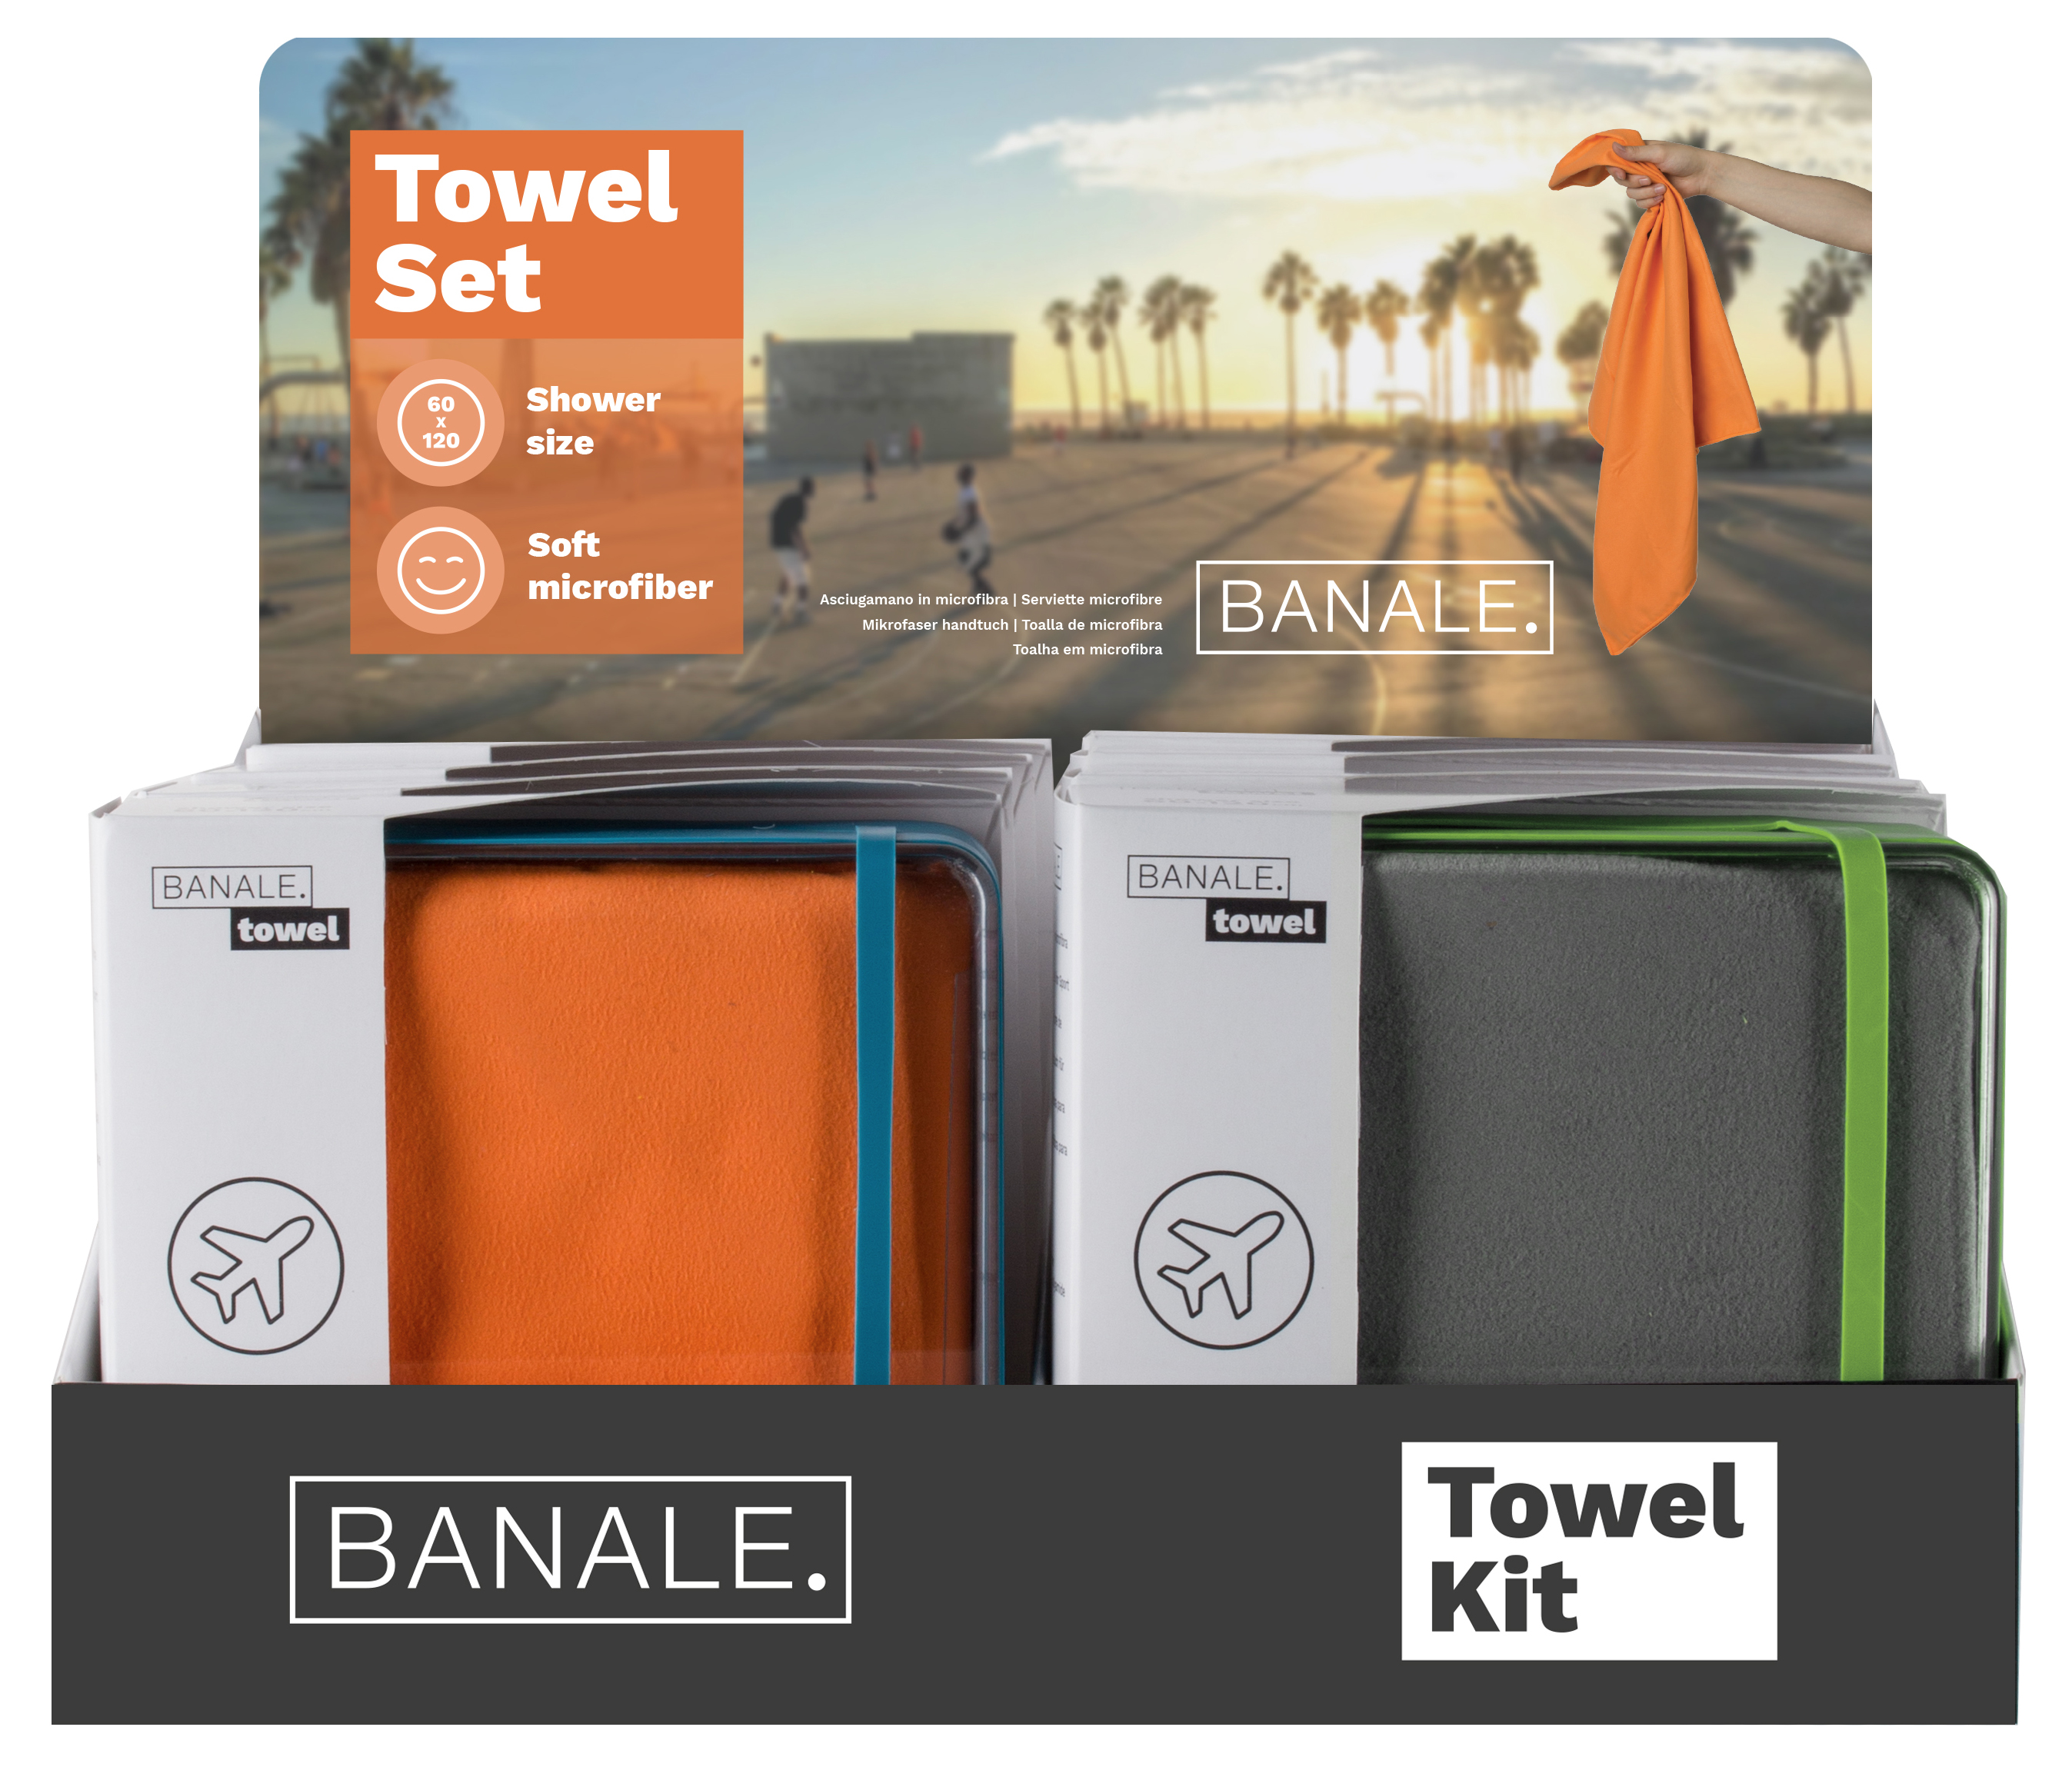 Towel starter kit